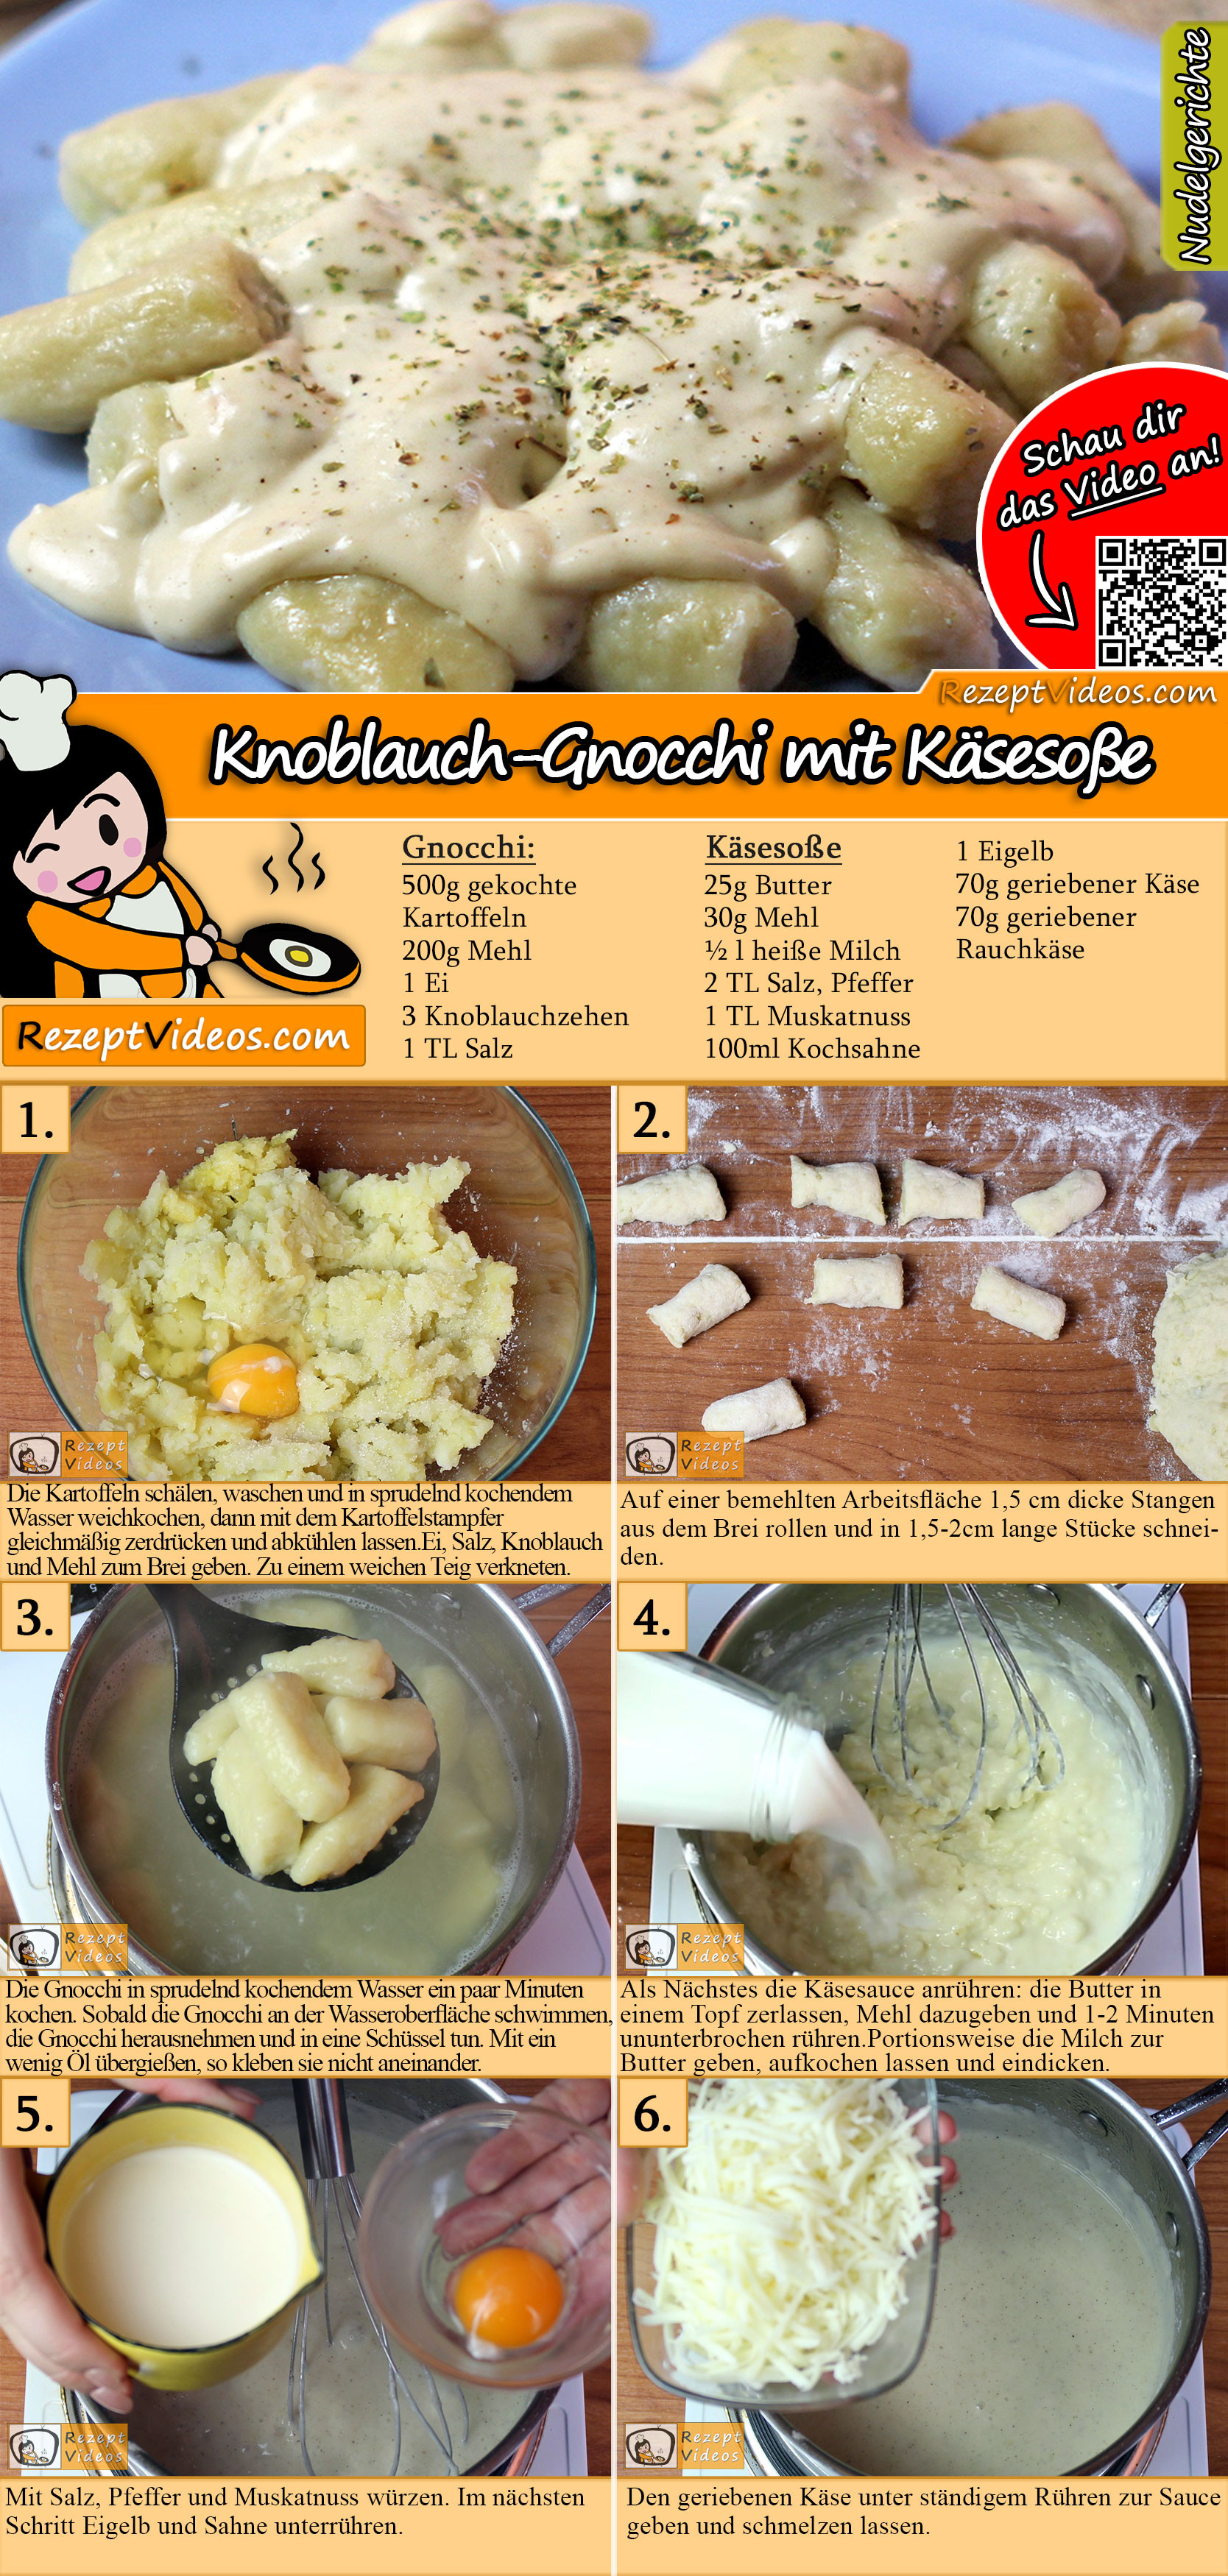 Knoblauch-Gnocchi mit Käsesoße Rezept mit Video